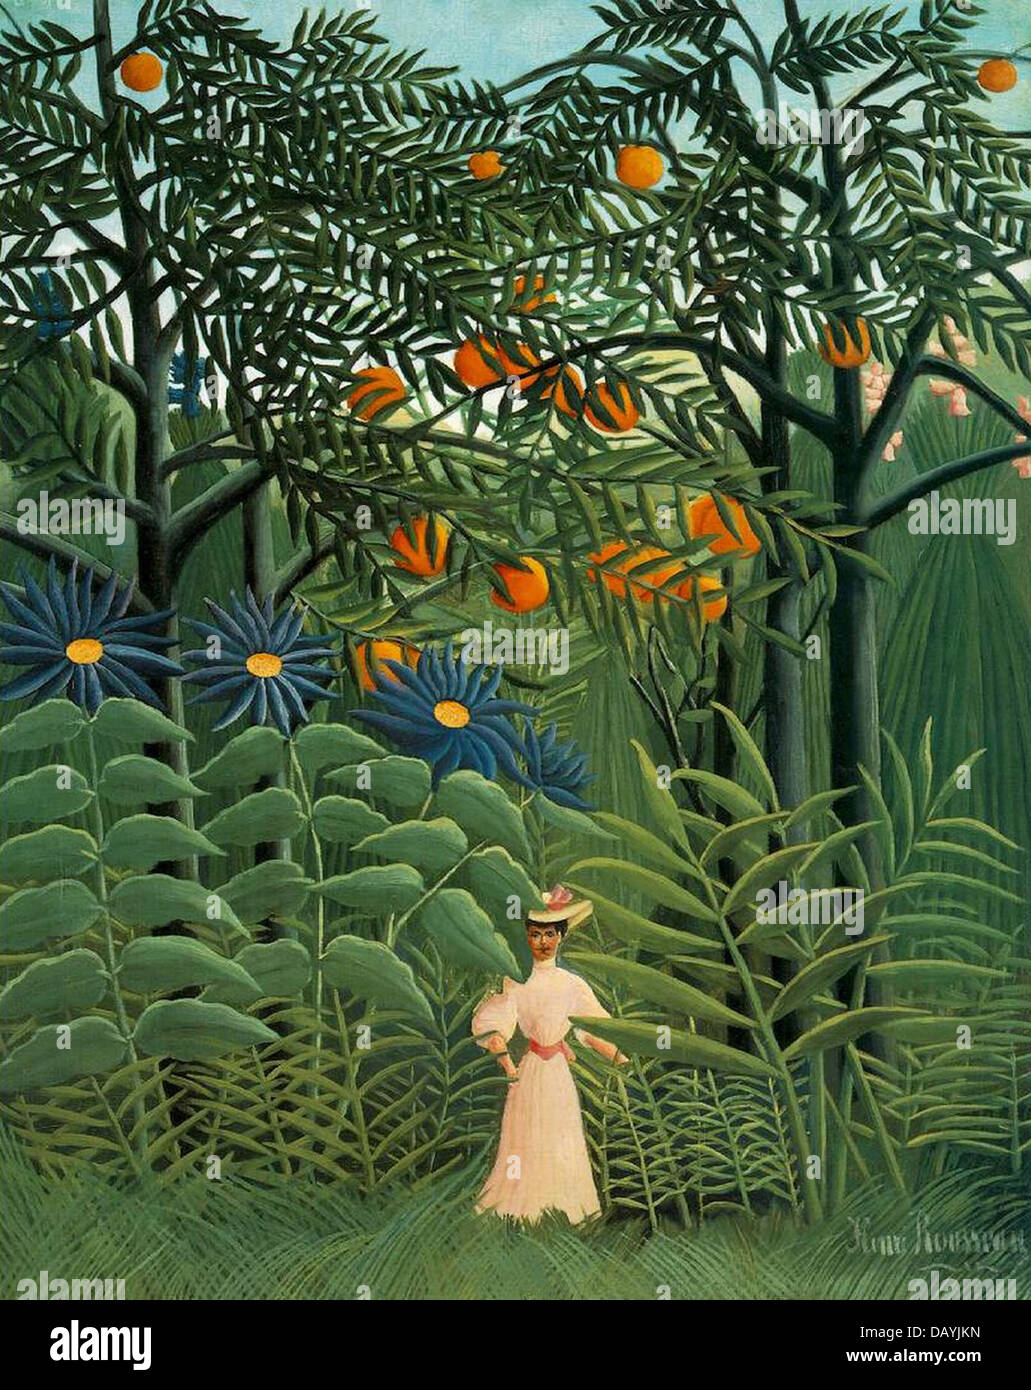 Henri Rousseau - Le Douanier Rousseau Femme se promenant dans une forêt exotique 1905 Barnes Fundation Stock Photo